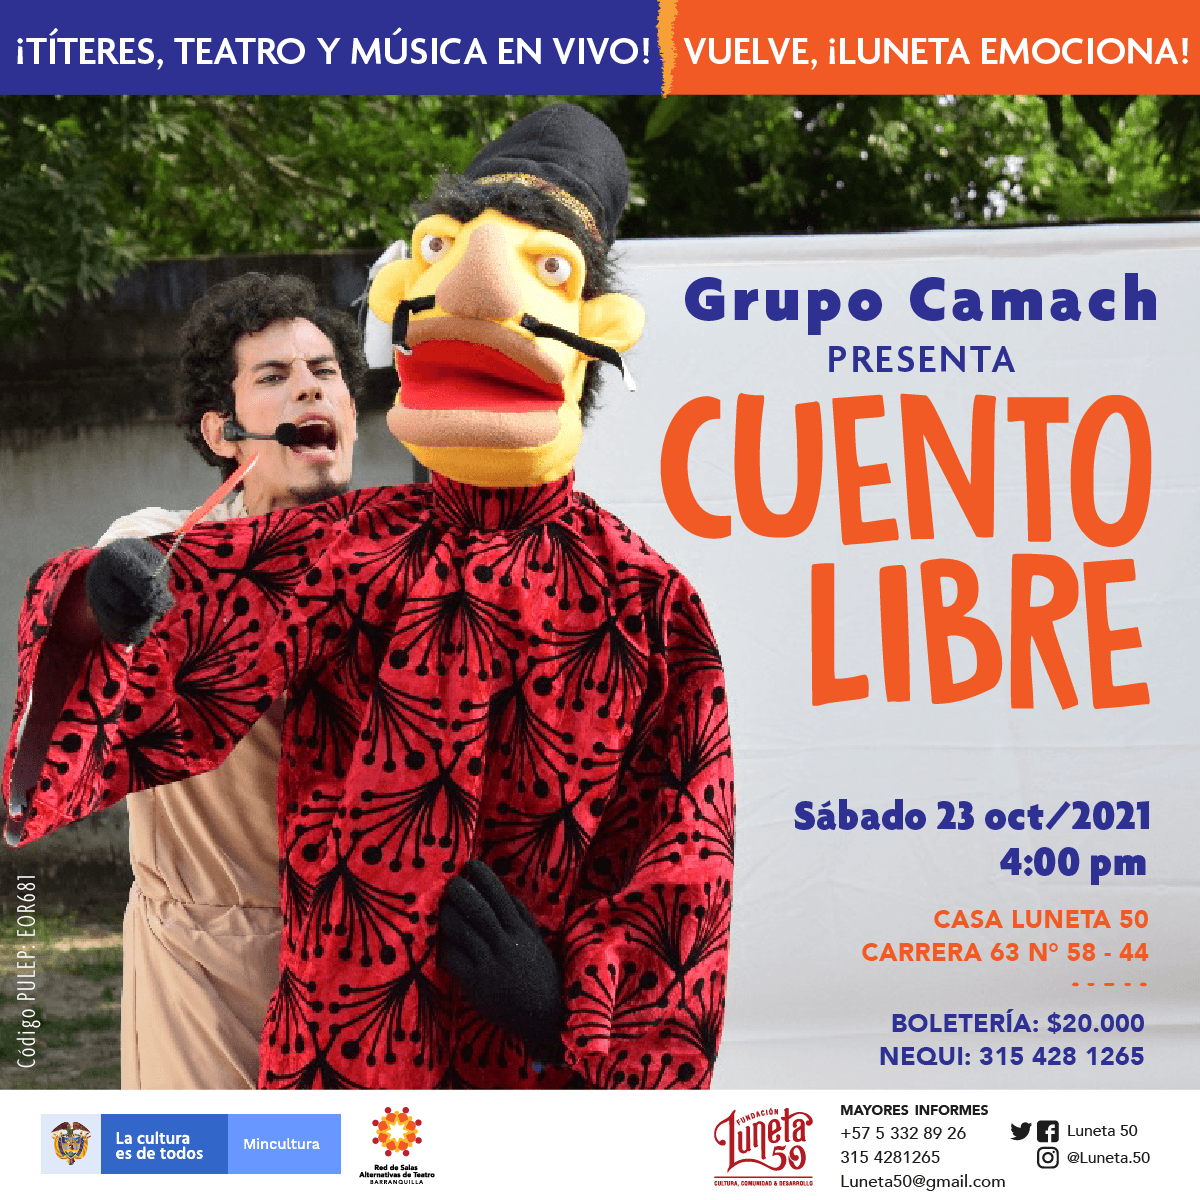 Cuento Libre es la obra que presentará el Grupo Camach en Luneta 50 este sábado.